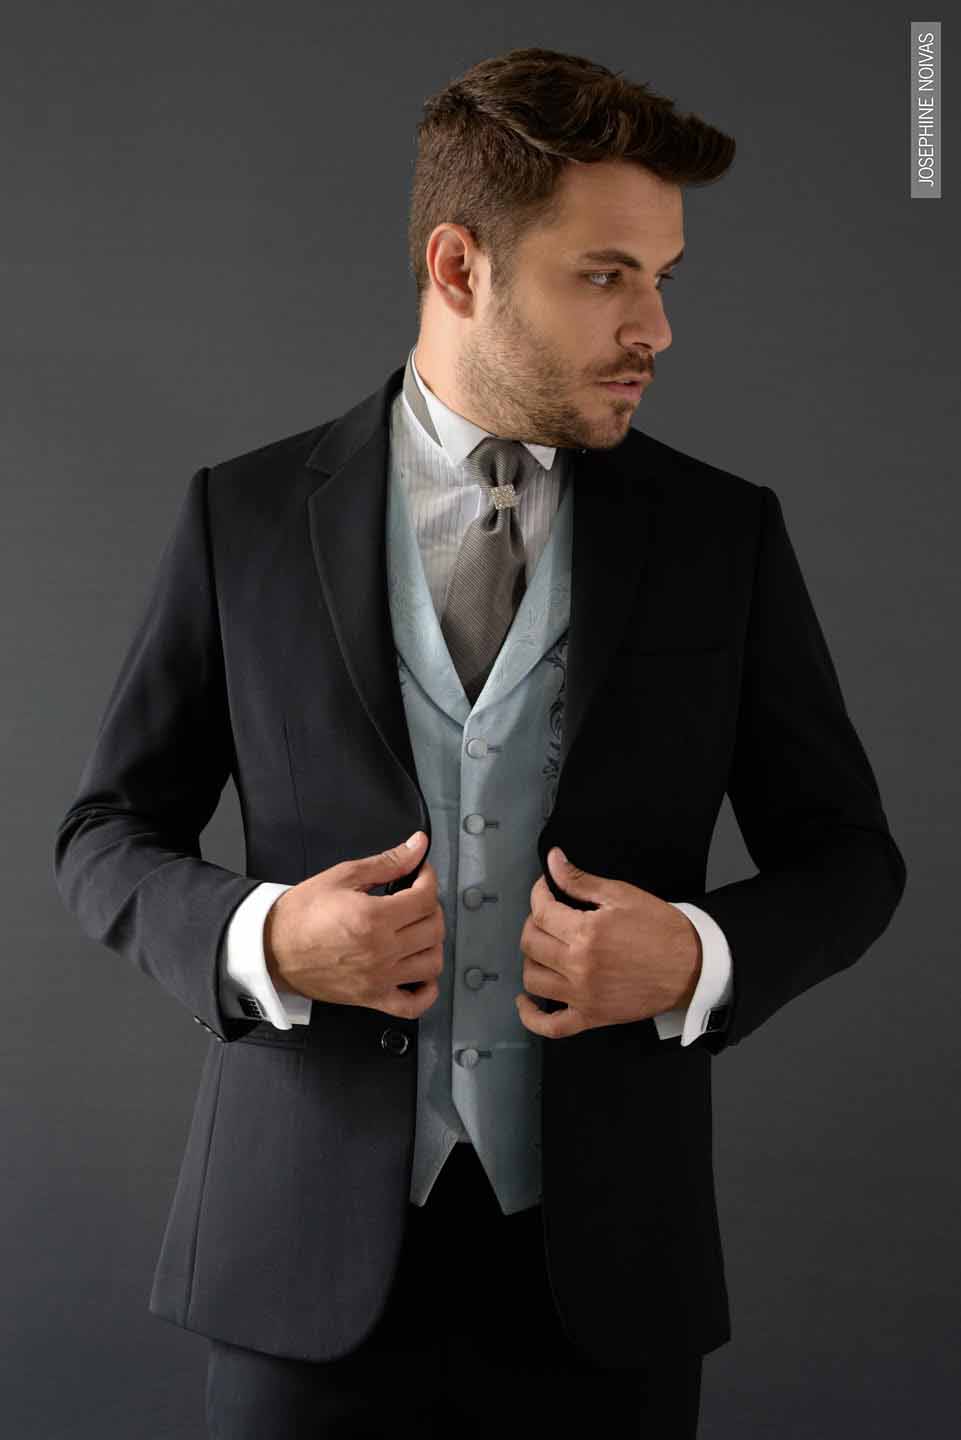 Terno Preto com colete Azul claro e Gravata noivo cinza